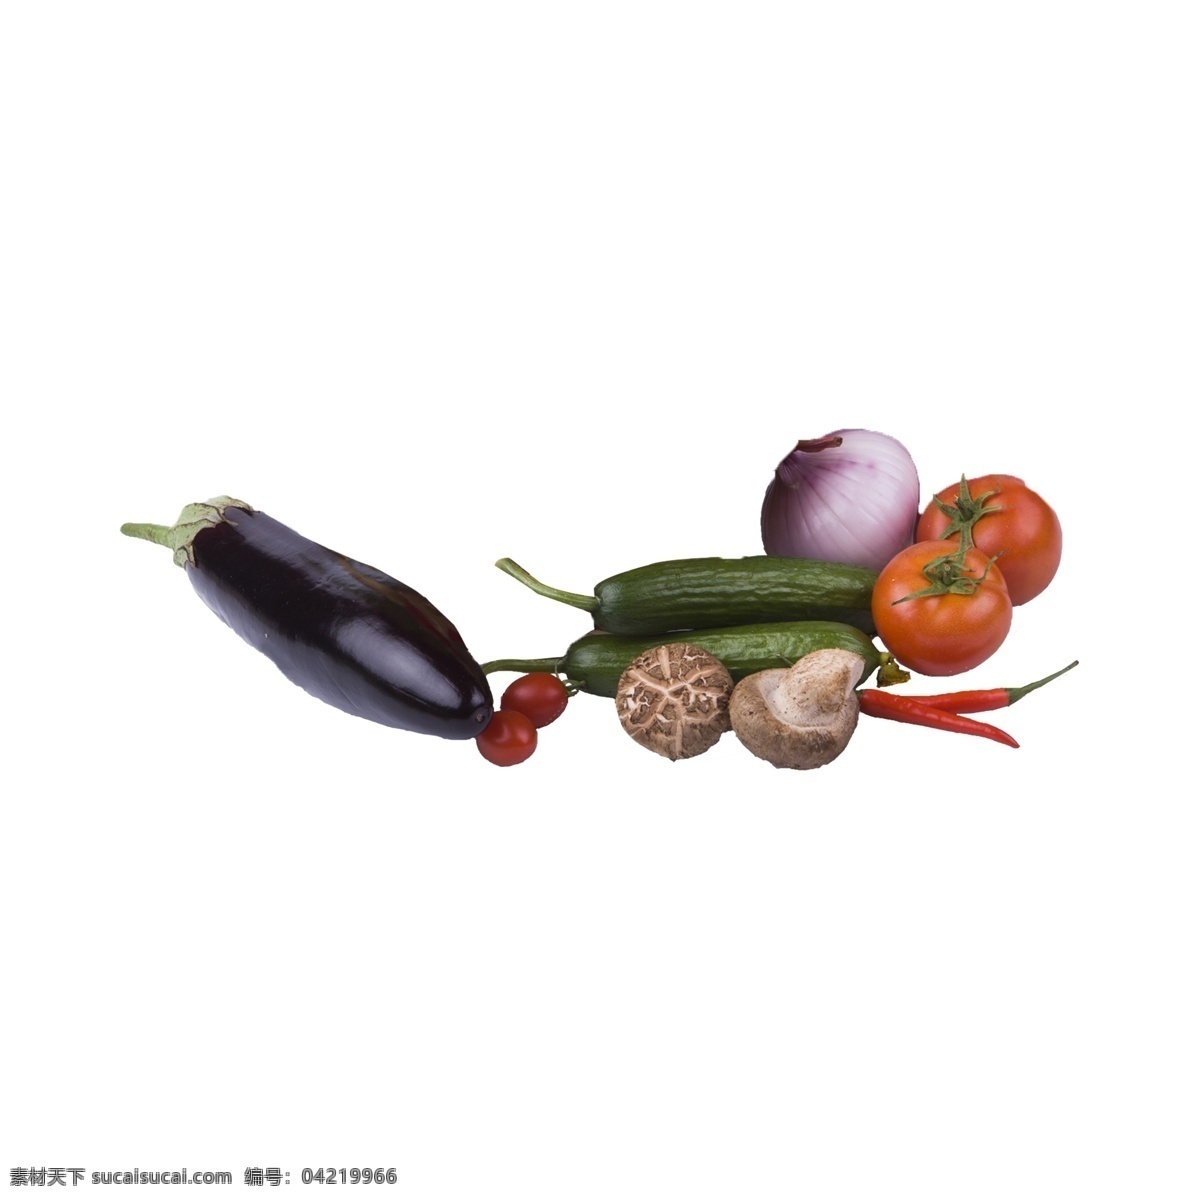 蔬菜 组合 实拍 免 抠 蔬菜组合 实物 拍摄 新鲜 营养 植物 食材 粮食 摄影图 菜品 特写